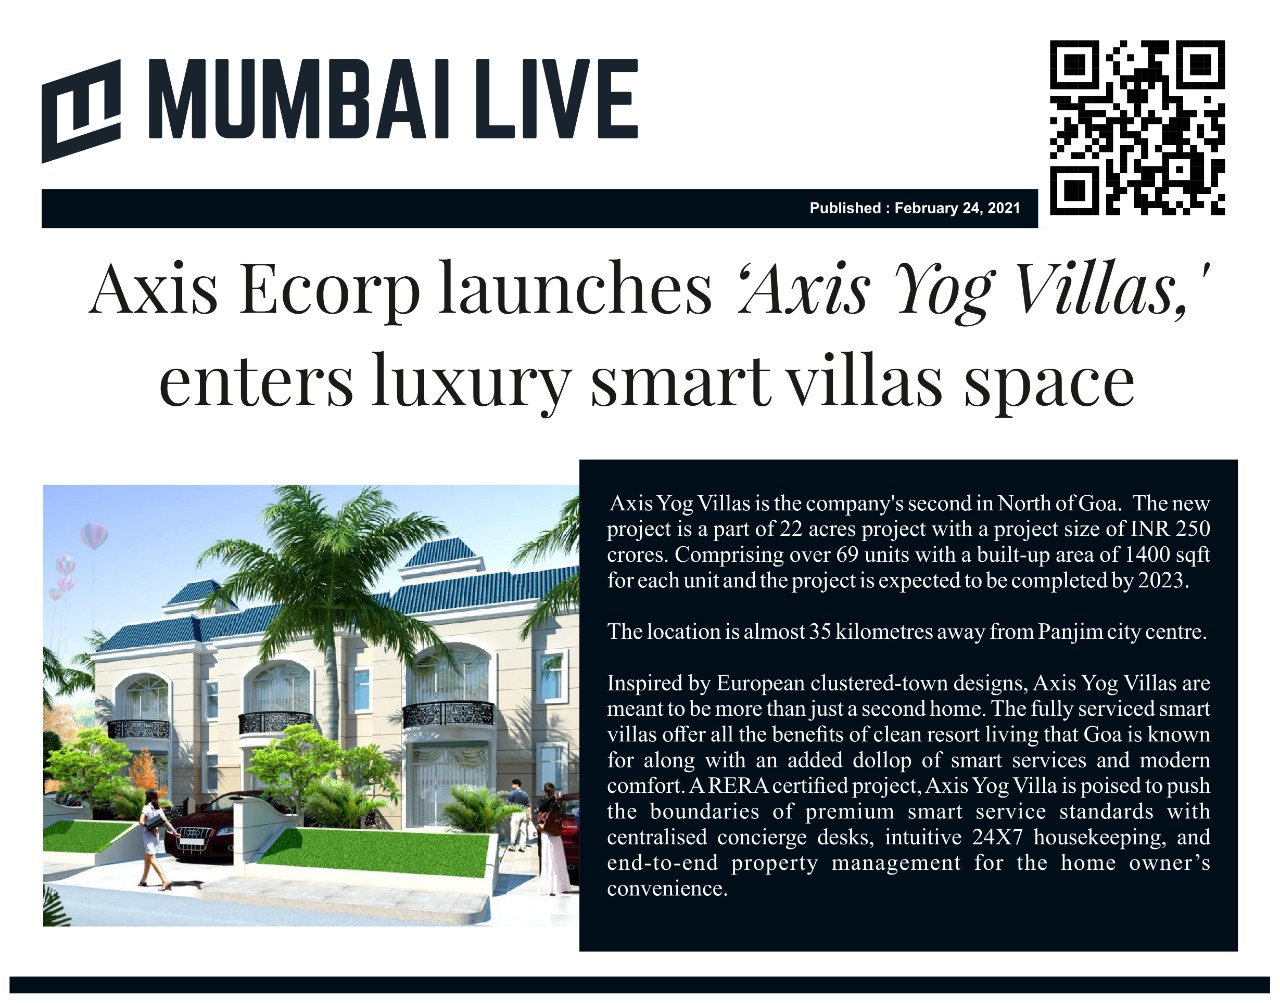 Axis Ecorp launches ‘Axis Yog Villas